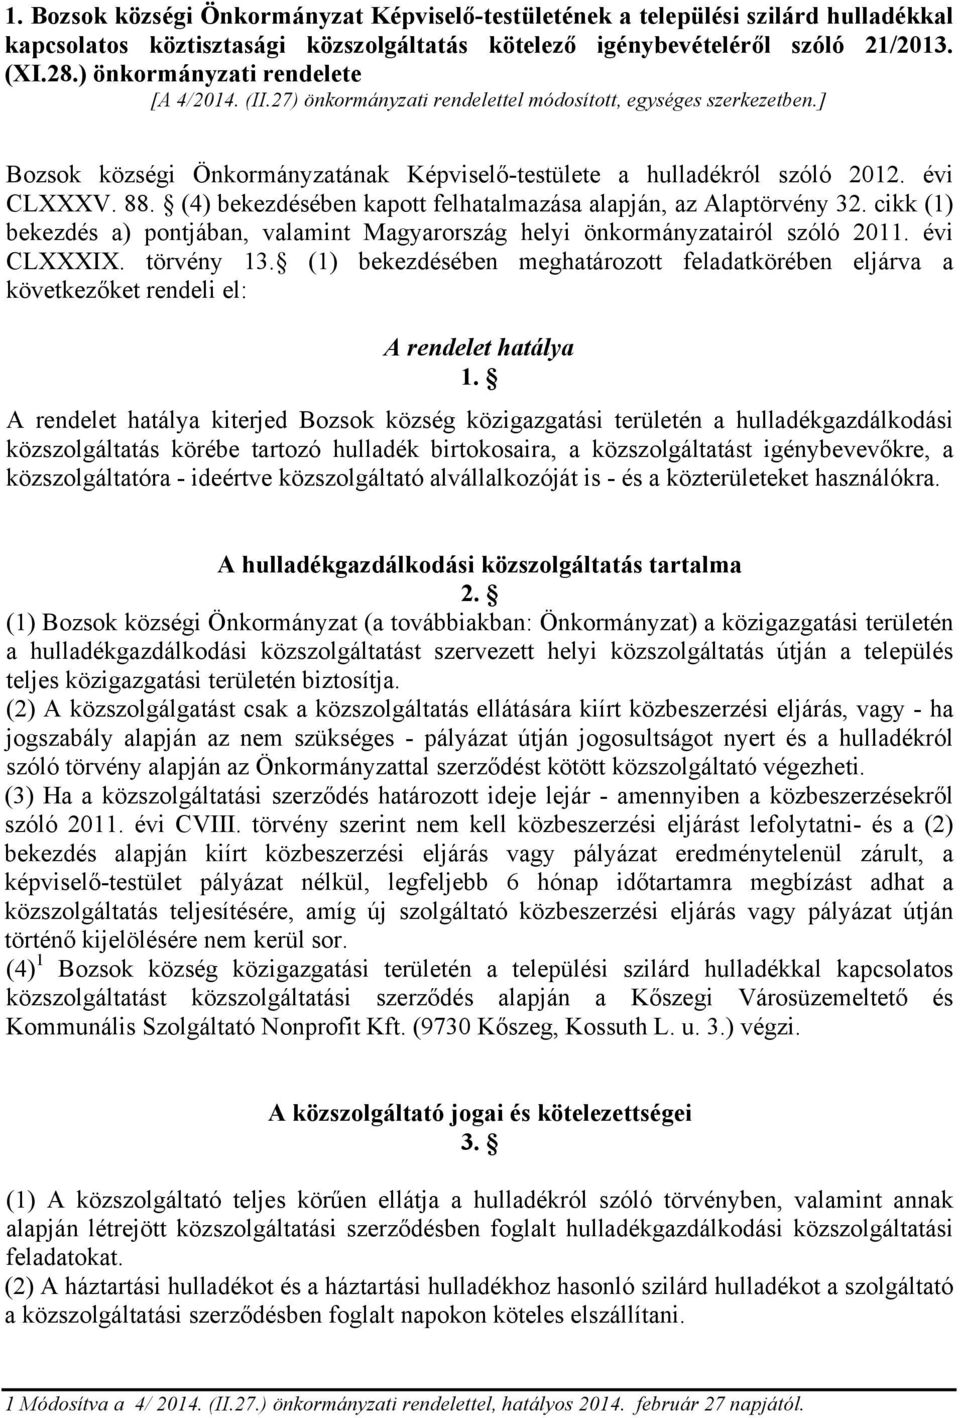 (4) bekezdésében kapott felhatalmazása alapján, az Alaptörvény 32. cikk (1) bekezdés a) pontjában, valamint Magyarország helyi önkormányzatairól szóló 2011. évi CLXXXIX. törvény 13.